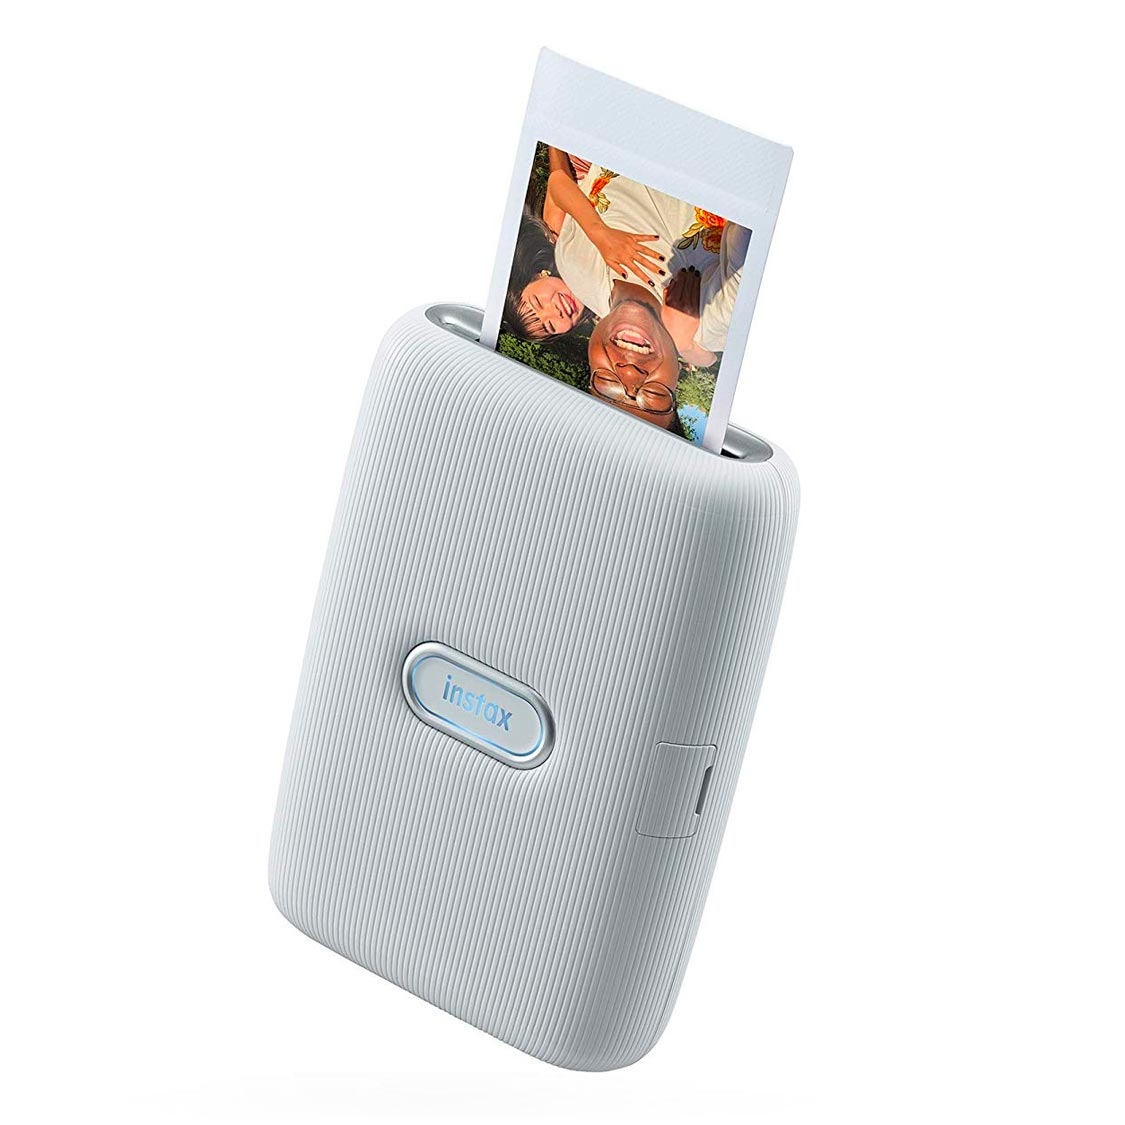 Bestphones  Imprimante Instax Mini Link de Fujifilm pour téléphone  intelligent blanc